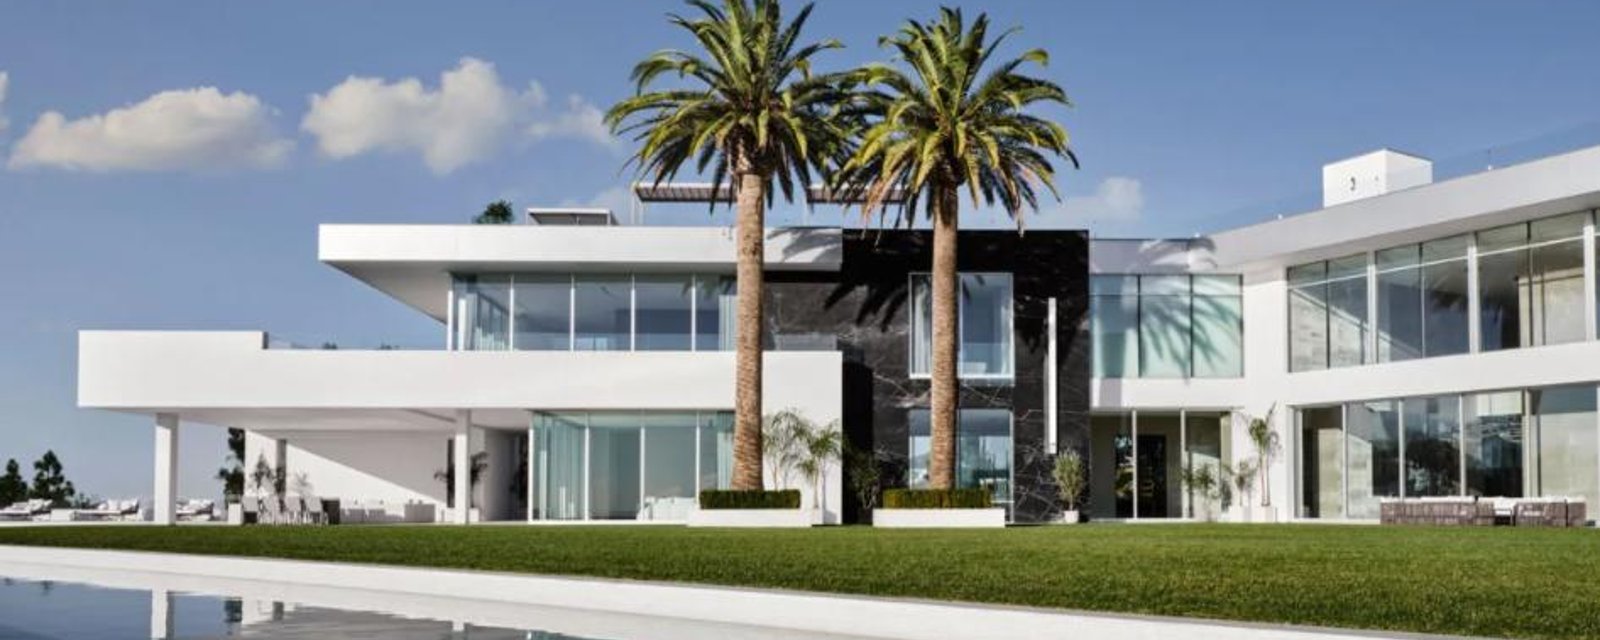 Cette maison en vente à 500 millions $ est en fait inhabitable